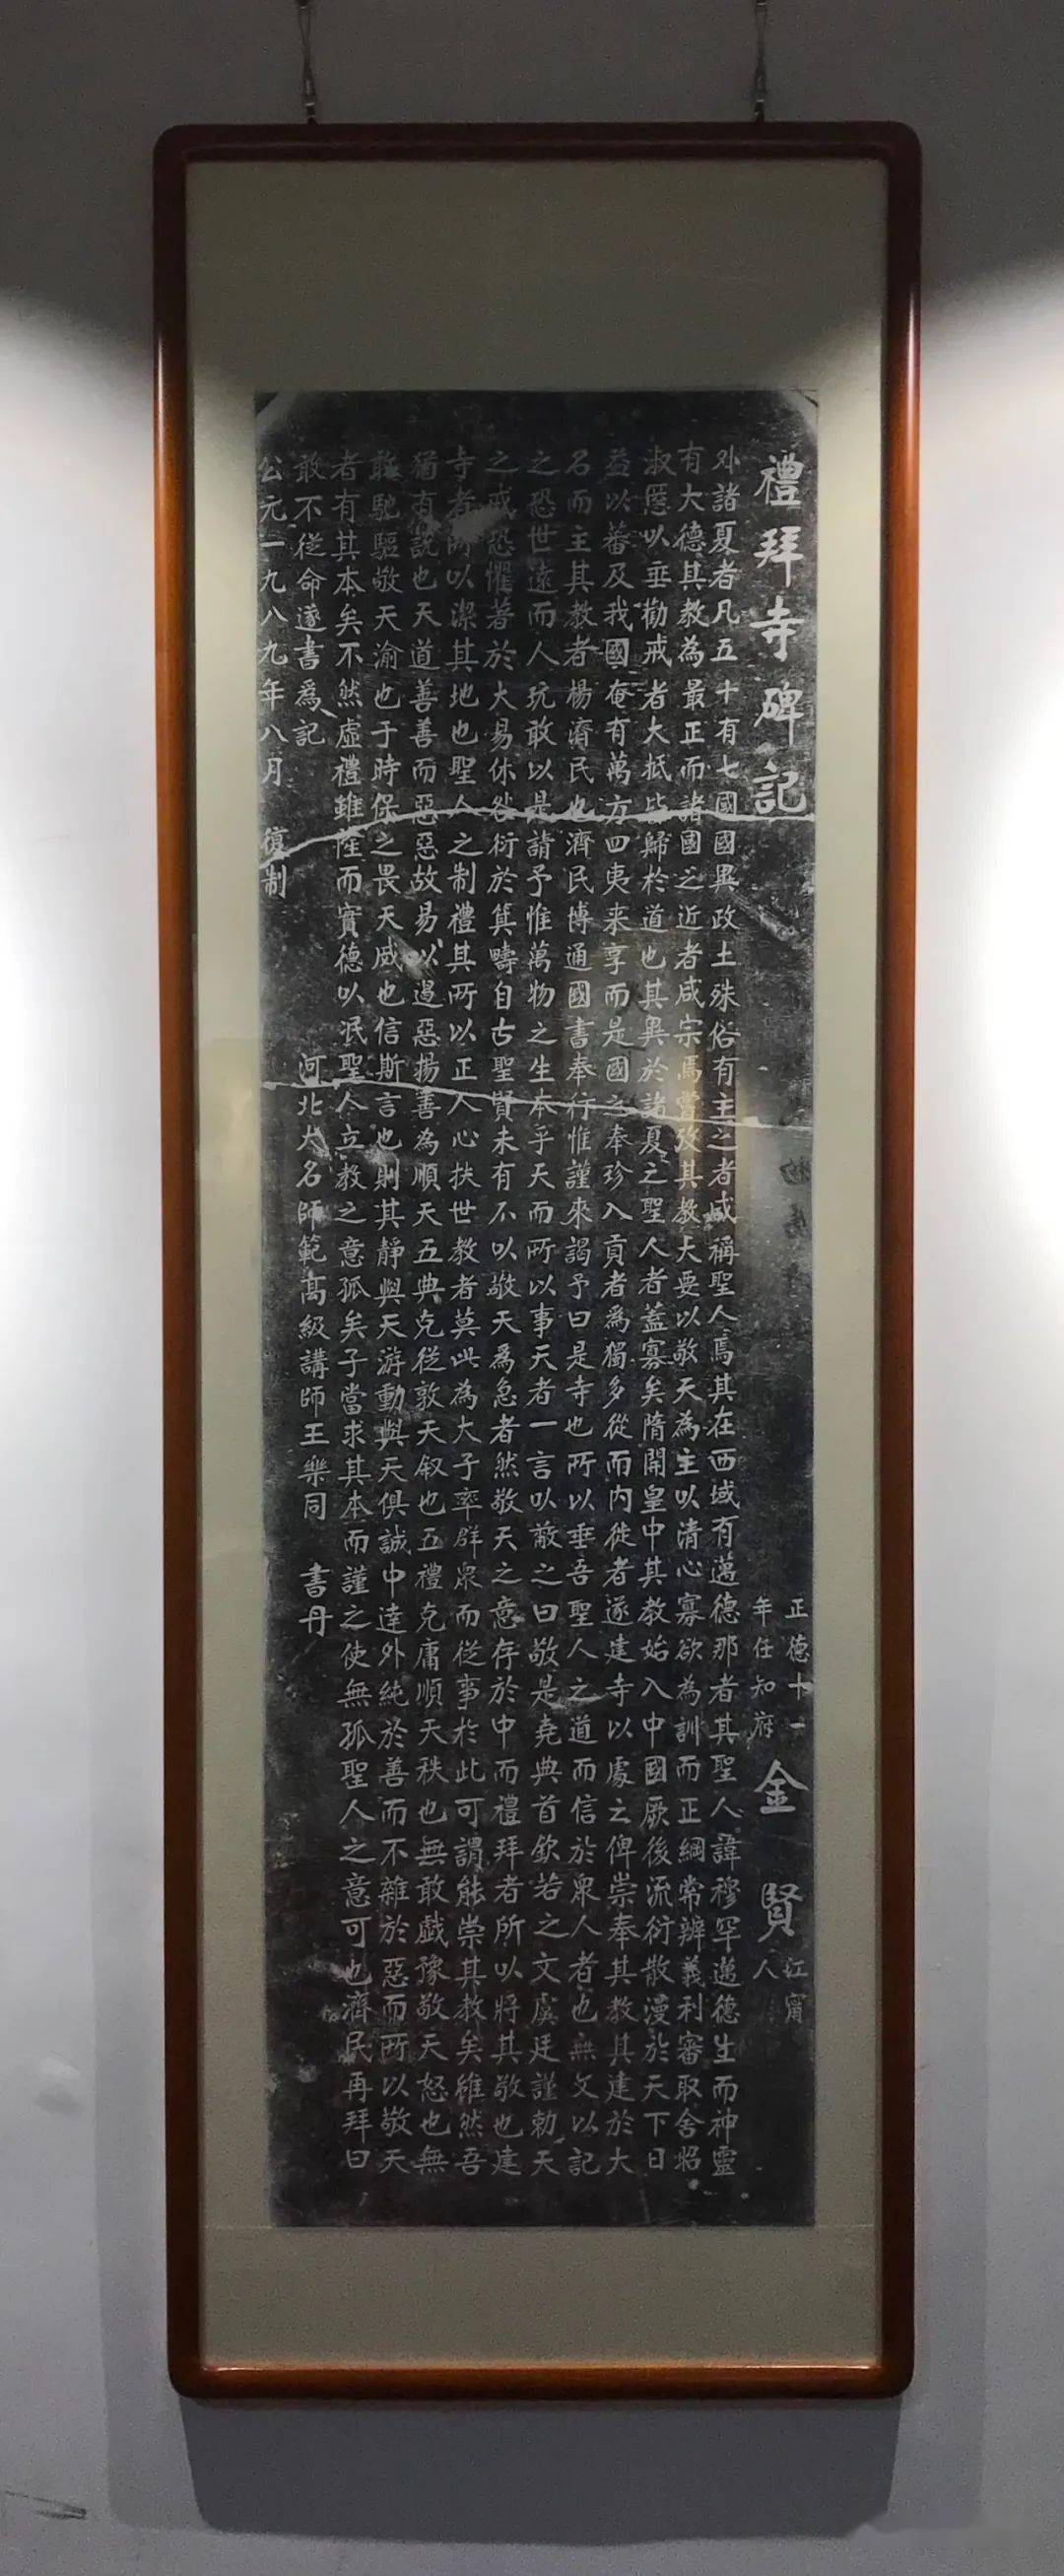 贞元增杯·内圆外方——镜头里的南宫碑体摄影网络展(二)